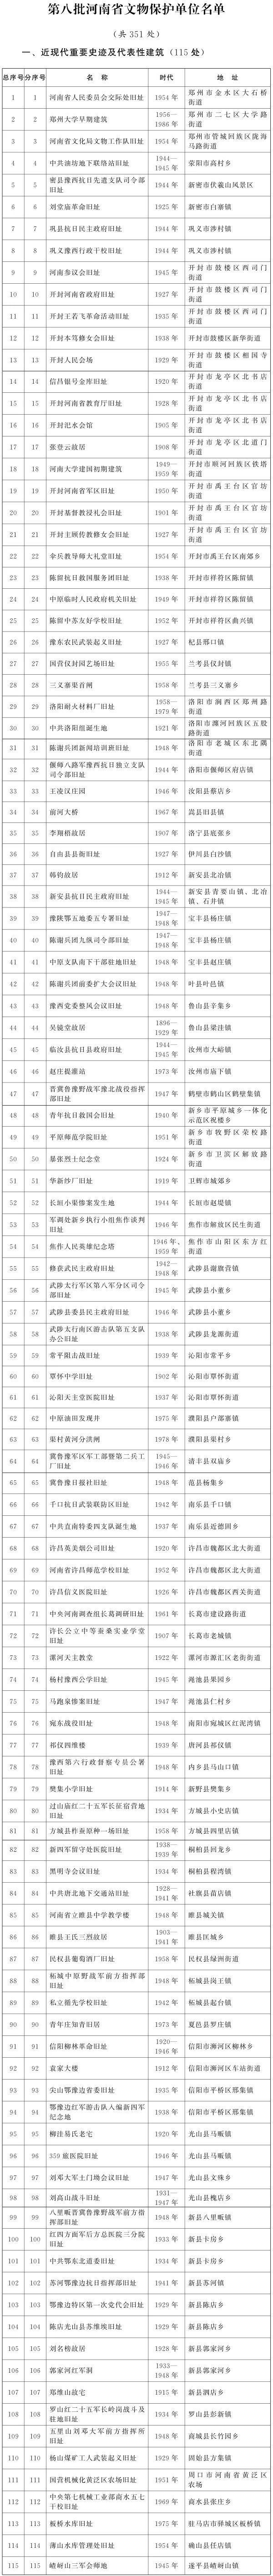 河南公布第八批河南省文物保护单位名单